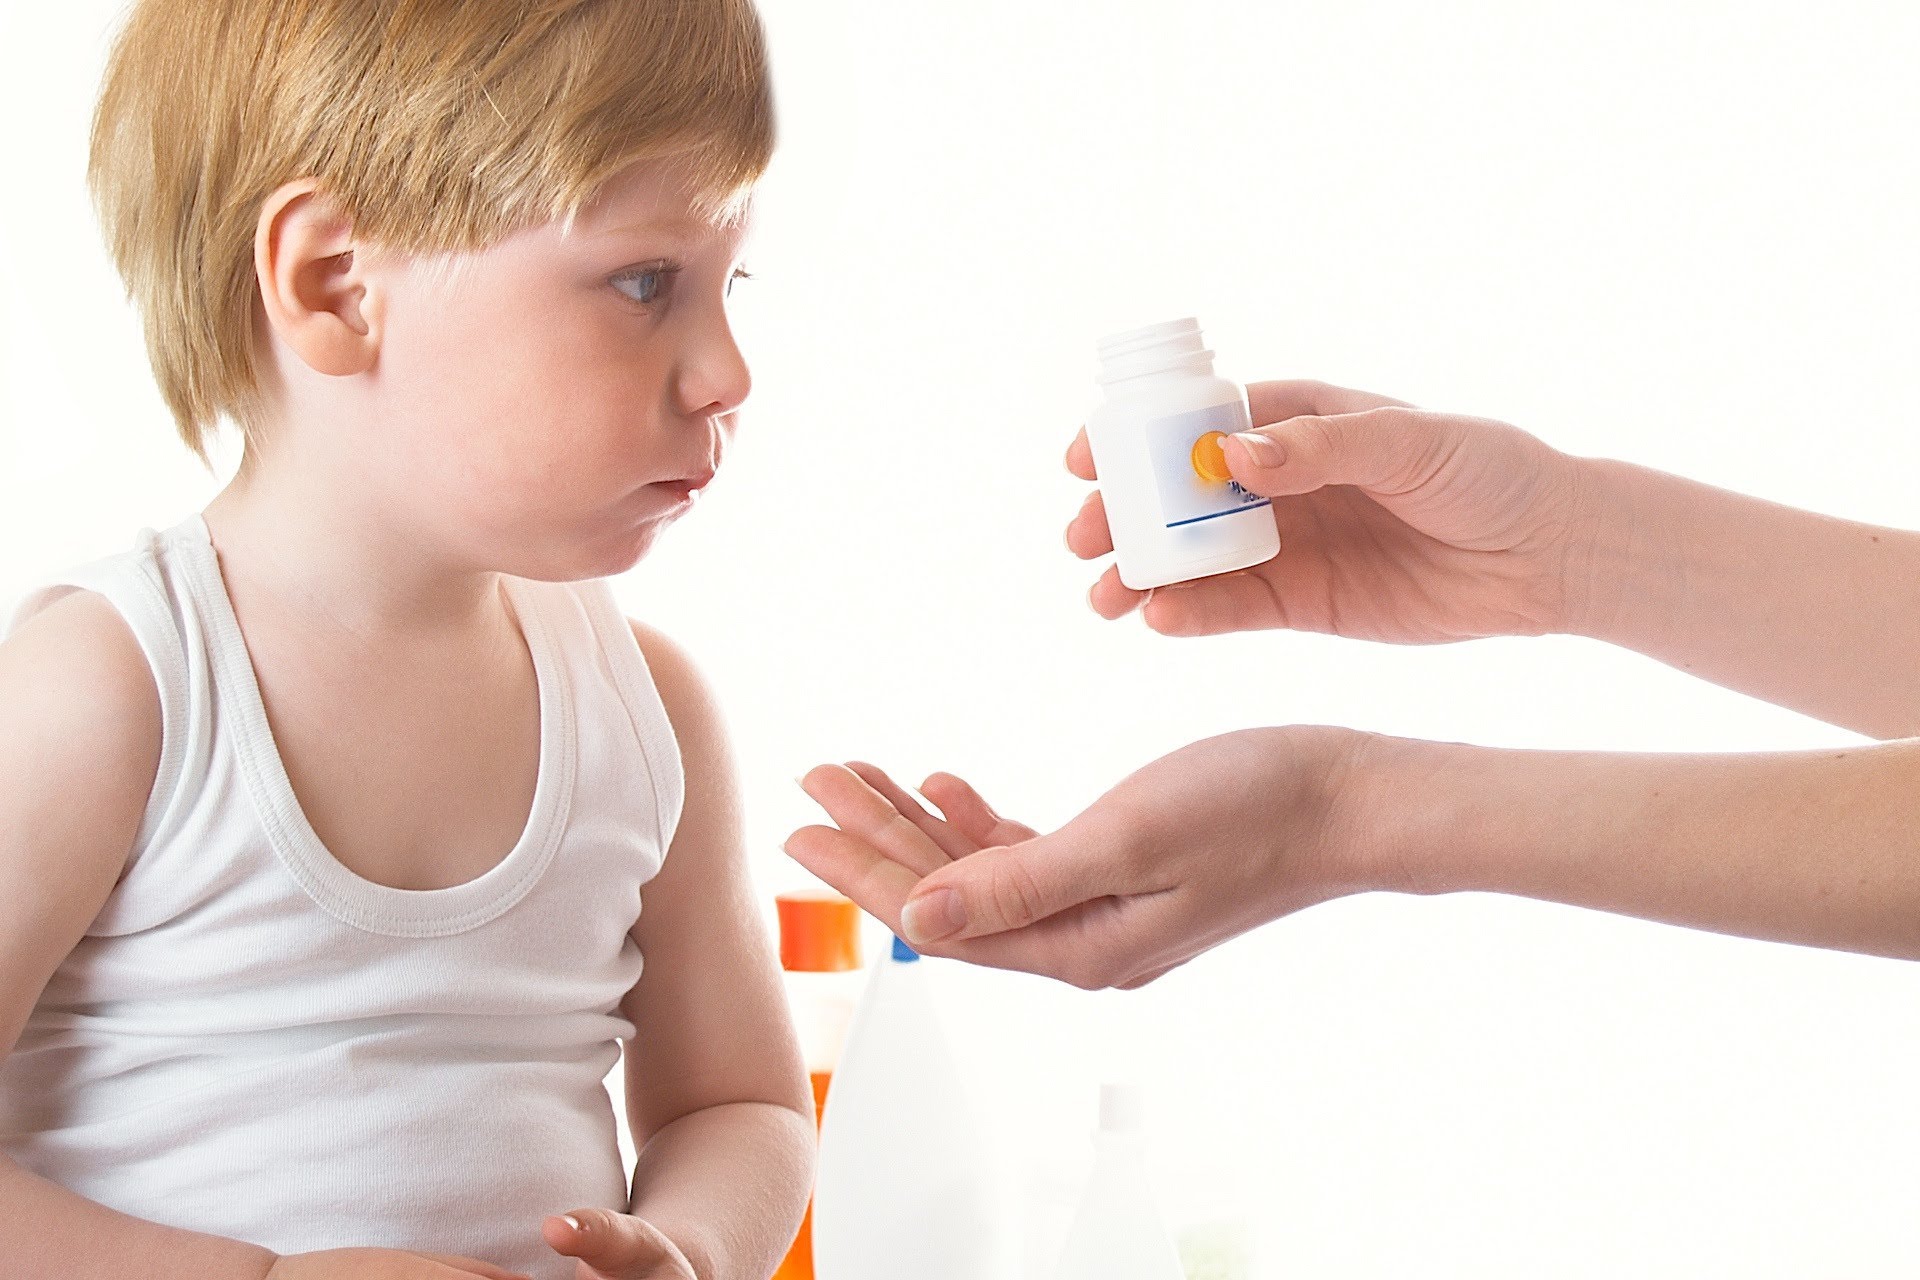 Các bé có những triệu chứng nghiêm trọng nhưng không phản ứng với liệu pháp, được cho phép sử dụng thuốc methylphenidate liều lượng thấp, hoặc giả dược